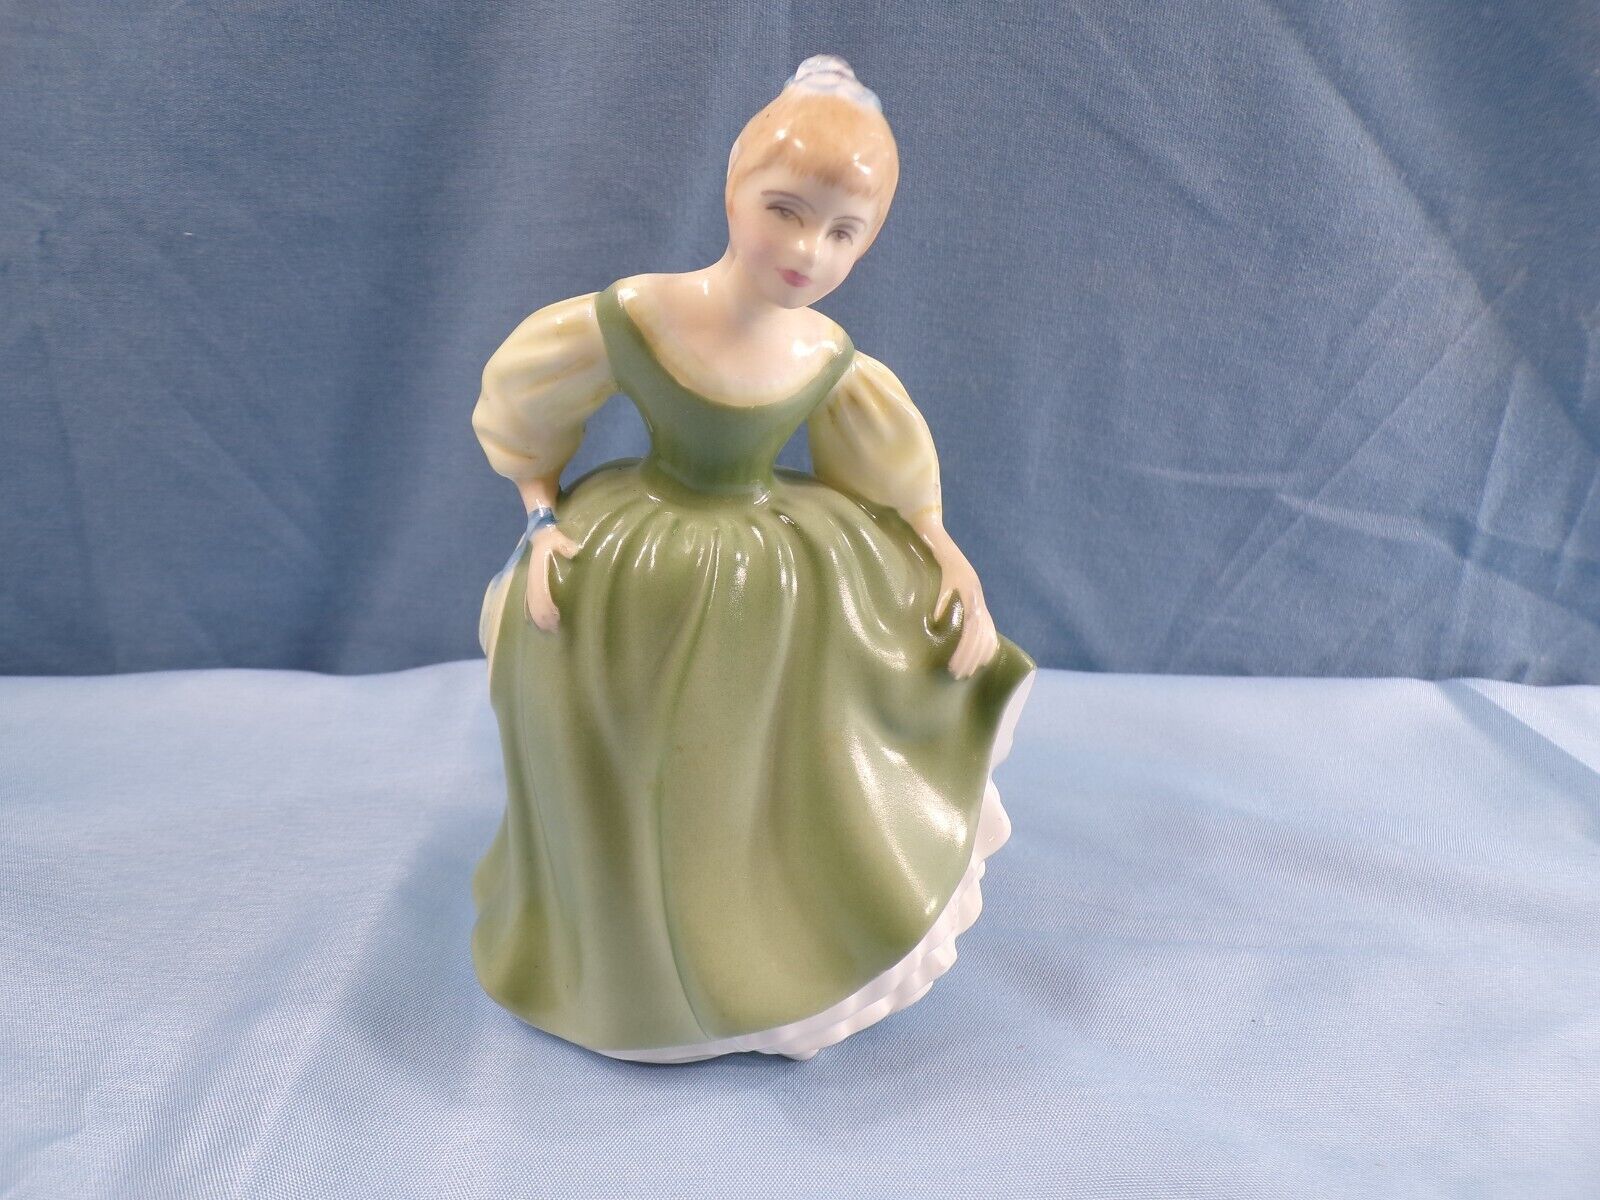 Royal Doulton Figurine HN2211 Fair Maiden - Exc. Condition